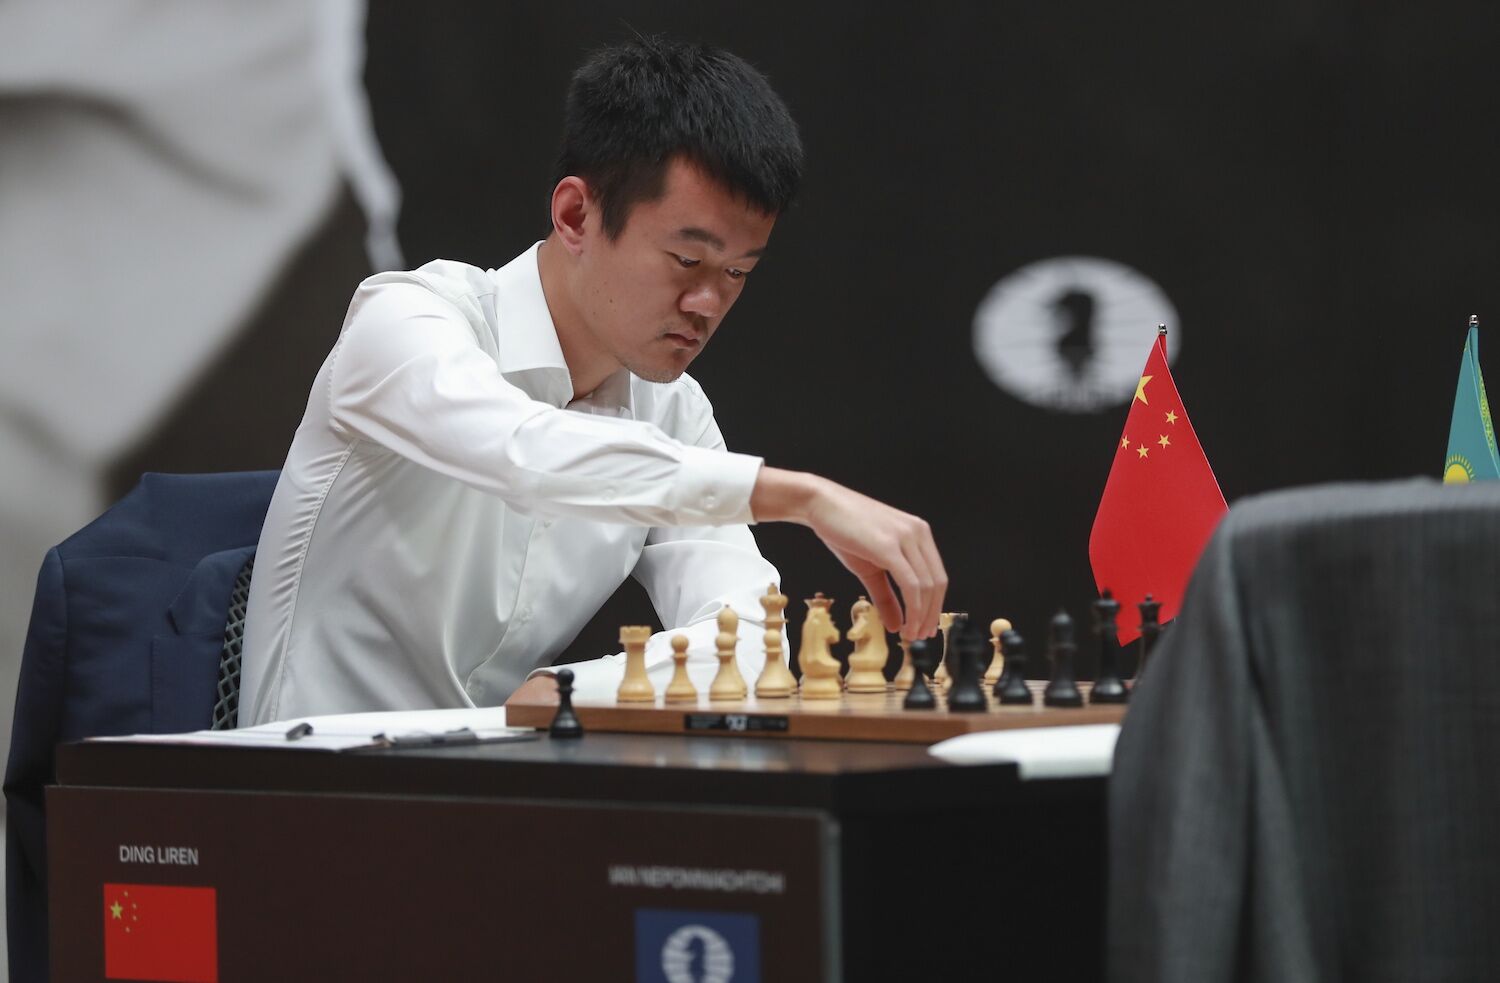 Ding bate Nepomniachtchti e é o primeiro chinês campeão mundial de